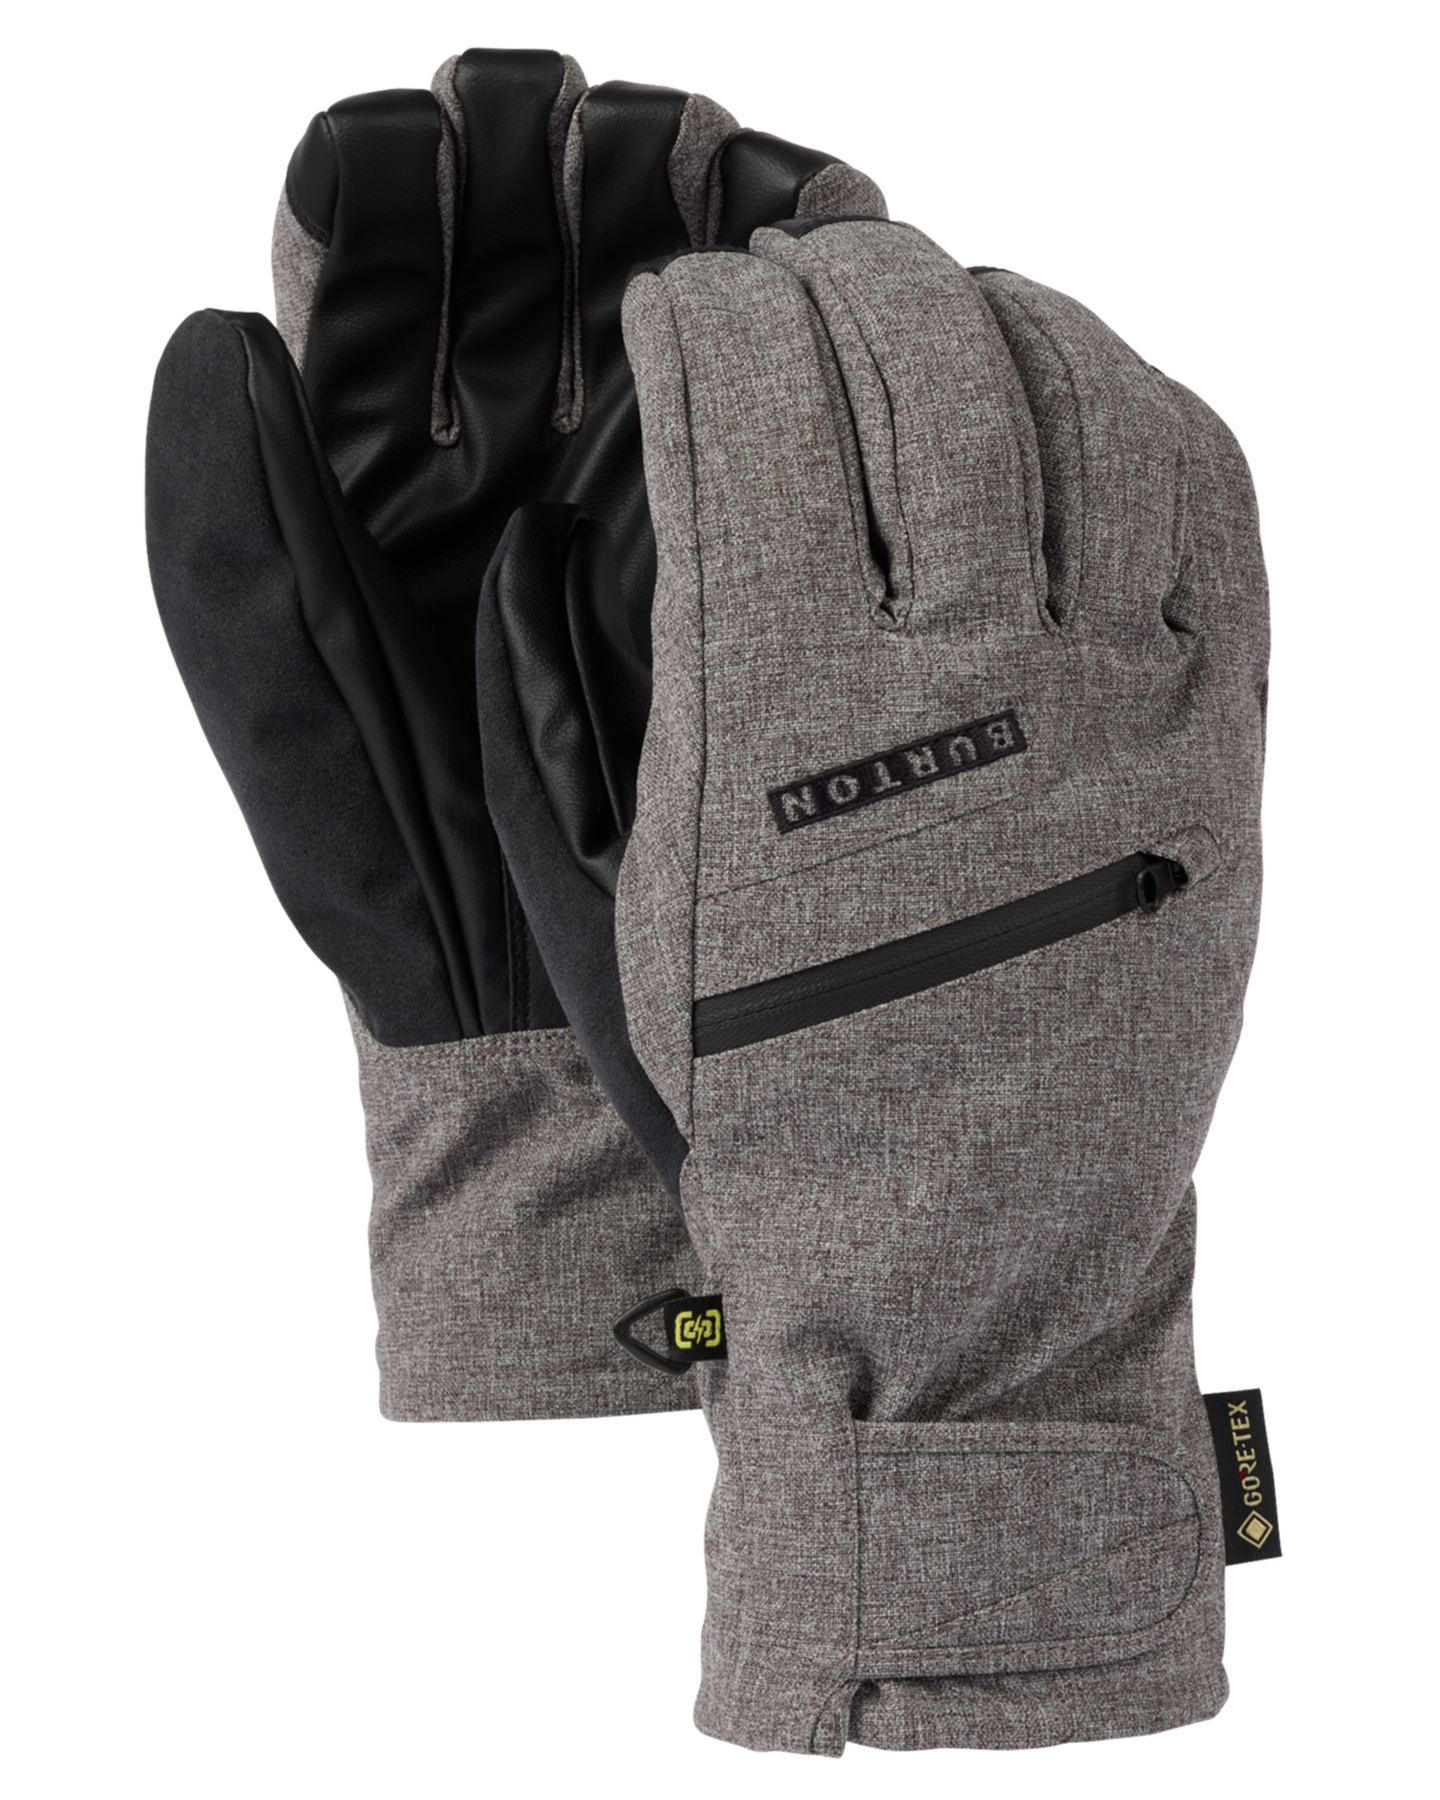 Burton Men's Gore-Tex Under Snow Gloves - Gray Heather Men's Snow Gloves & Mittens - Trojan Wake Ski Snow